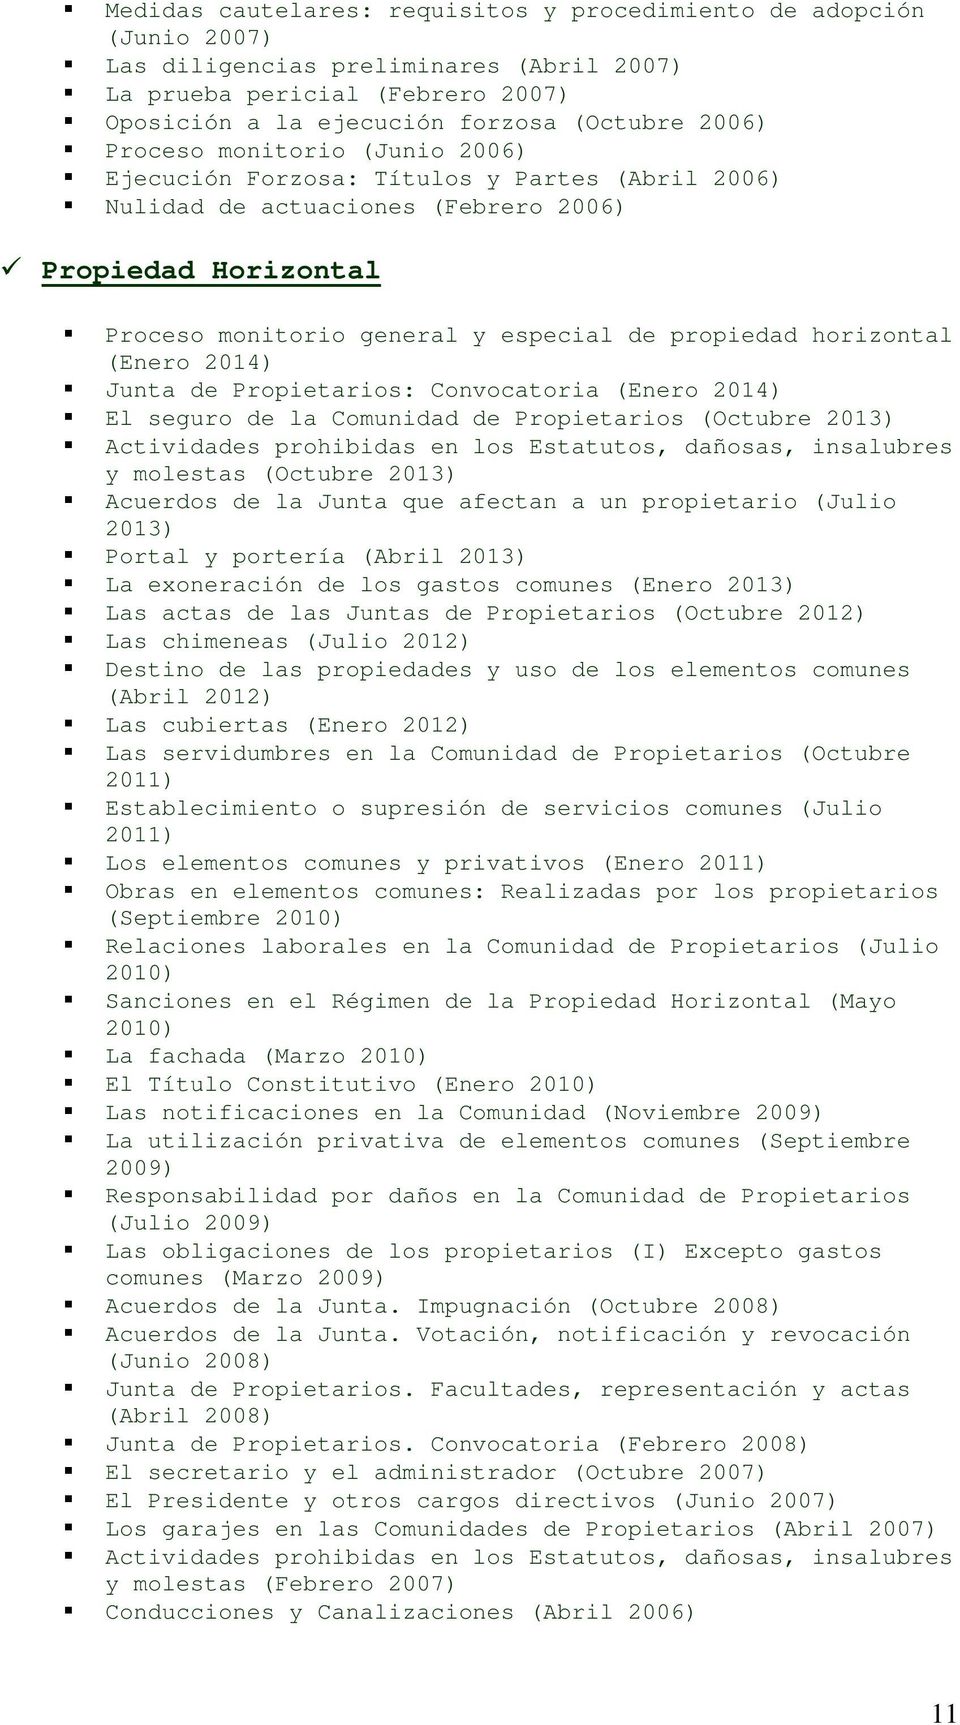 (Enero 2014) Junta de Propietarios: Convocatoria (Enero 2014) El seguro de la Comunidad de Propietarios (Octubre 2013) Actividades prohibidas en los Estatutos, dañosas, insalubres y molestas (Octubre